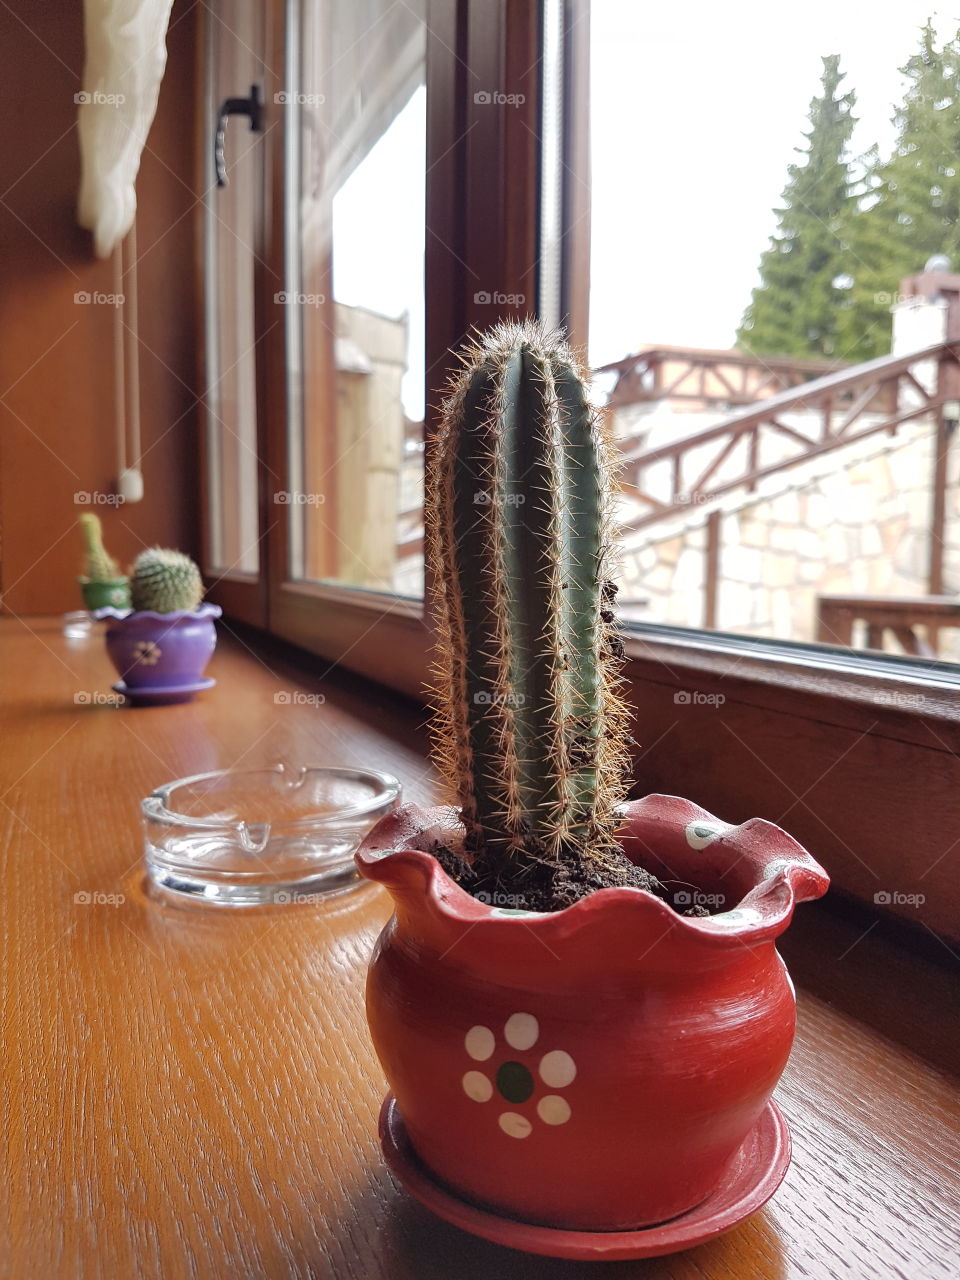 cactus besides window,mexico